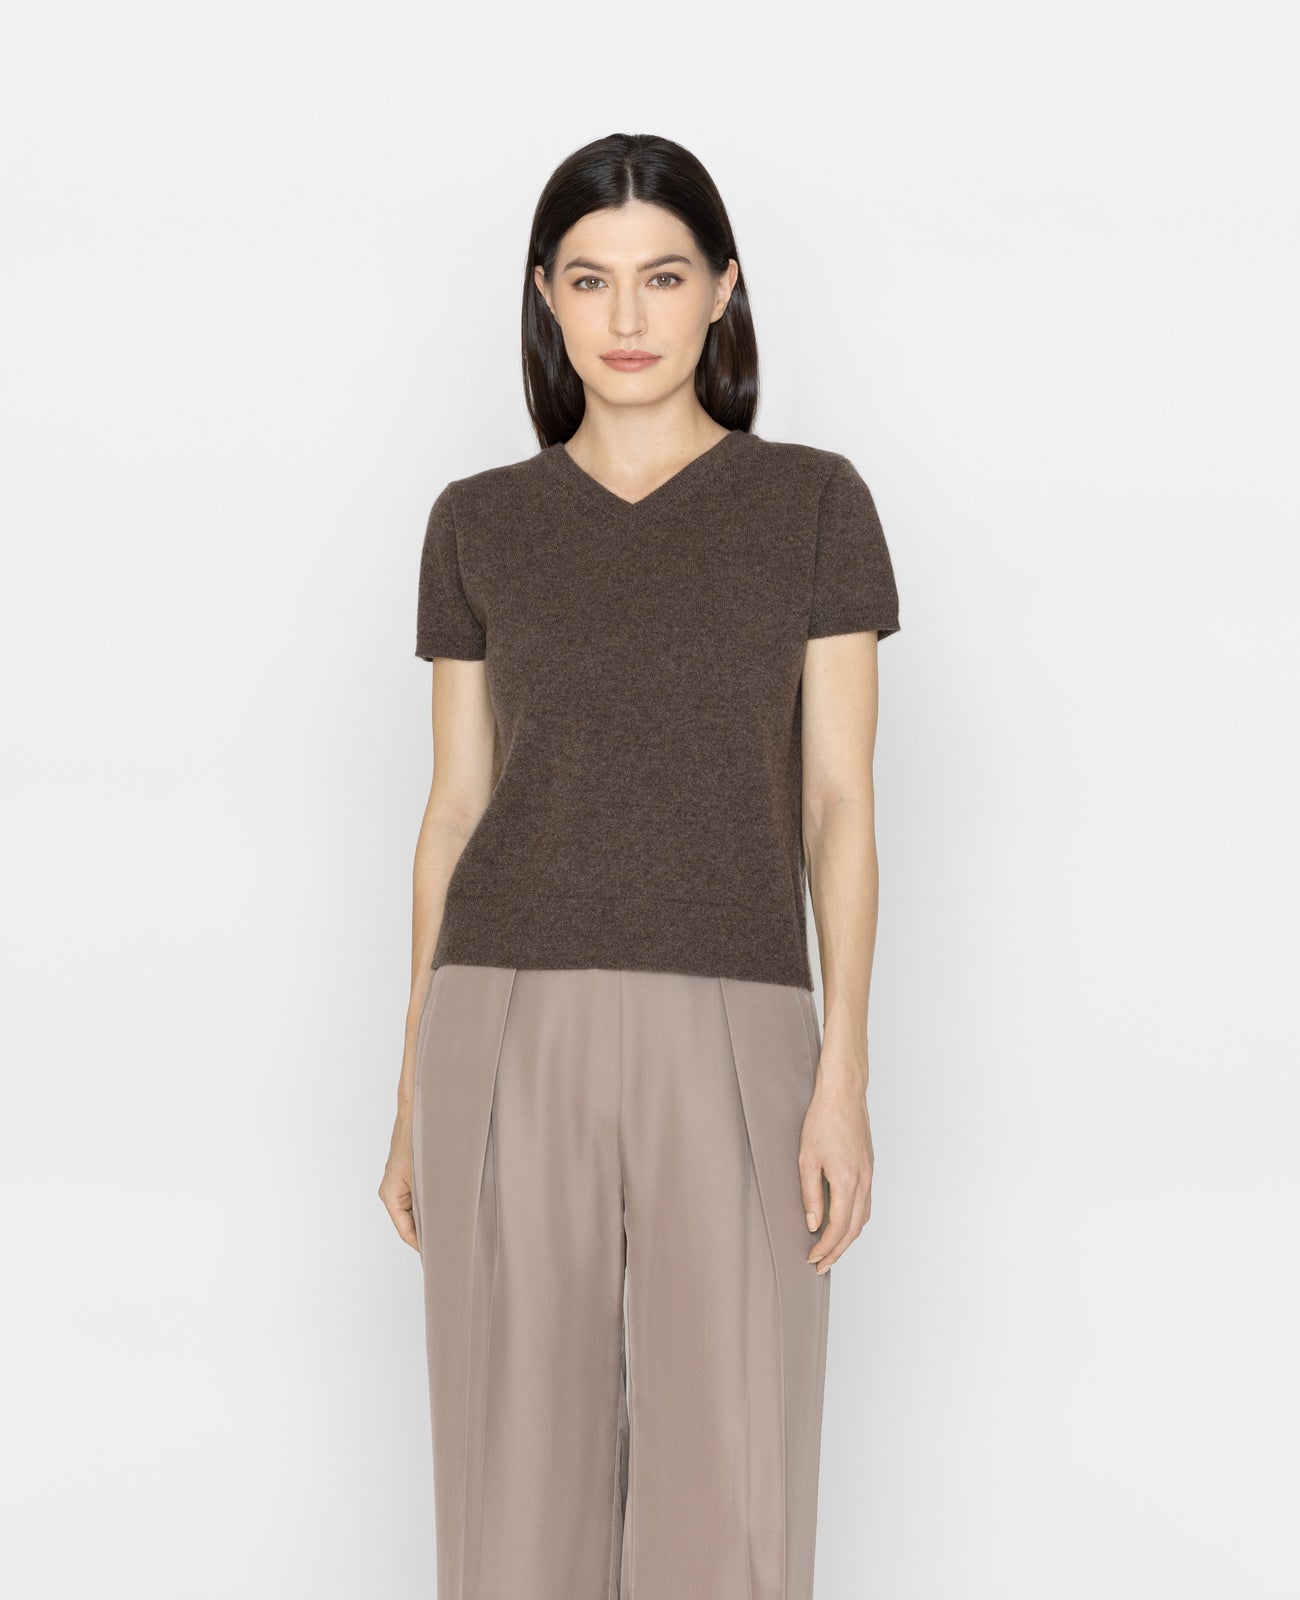 Cashmere 2-Way Short Sleeve Sweater in Dark Rye | GRANA #color_dark-rye